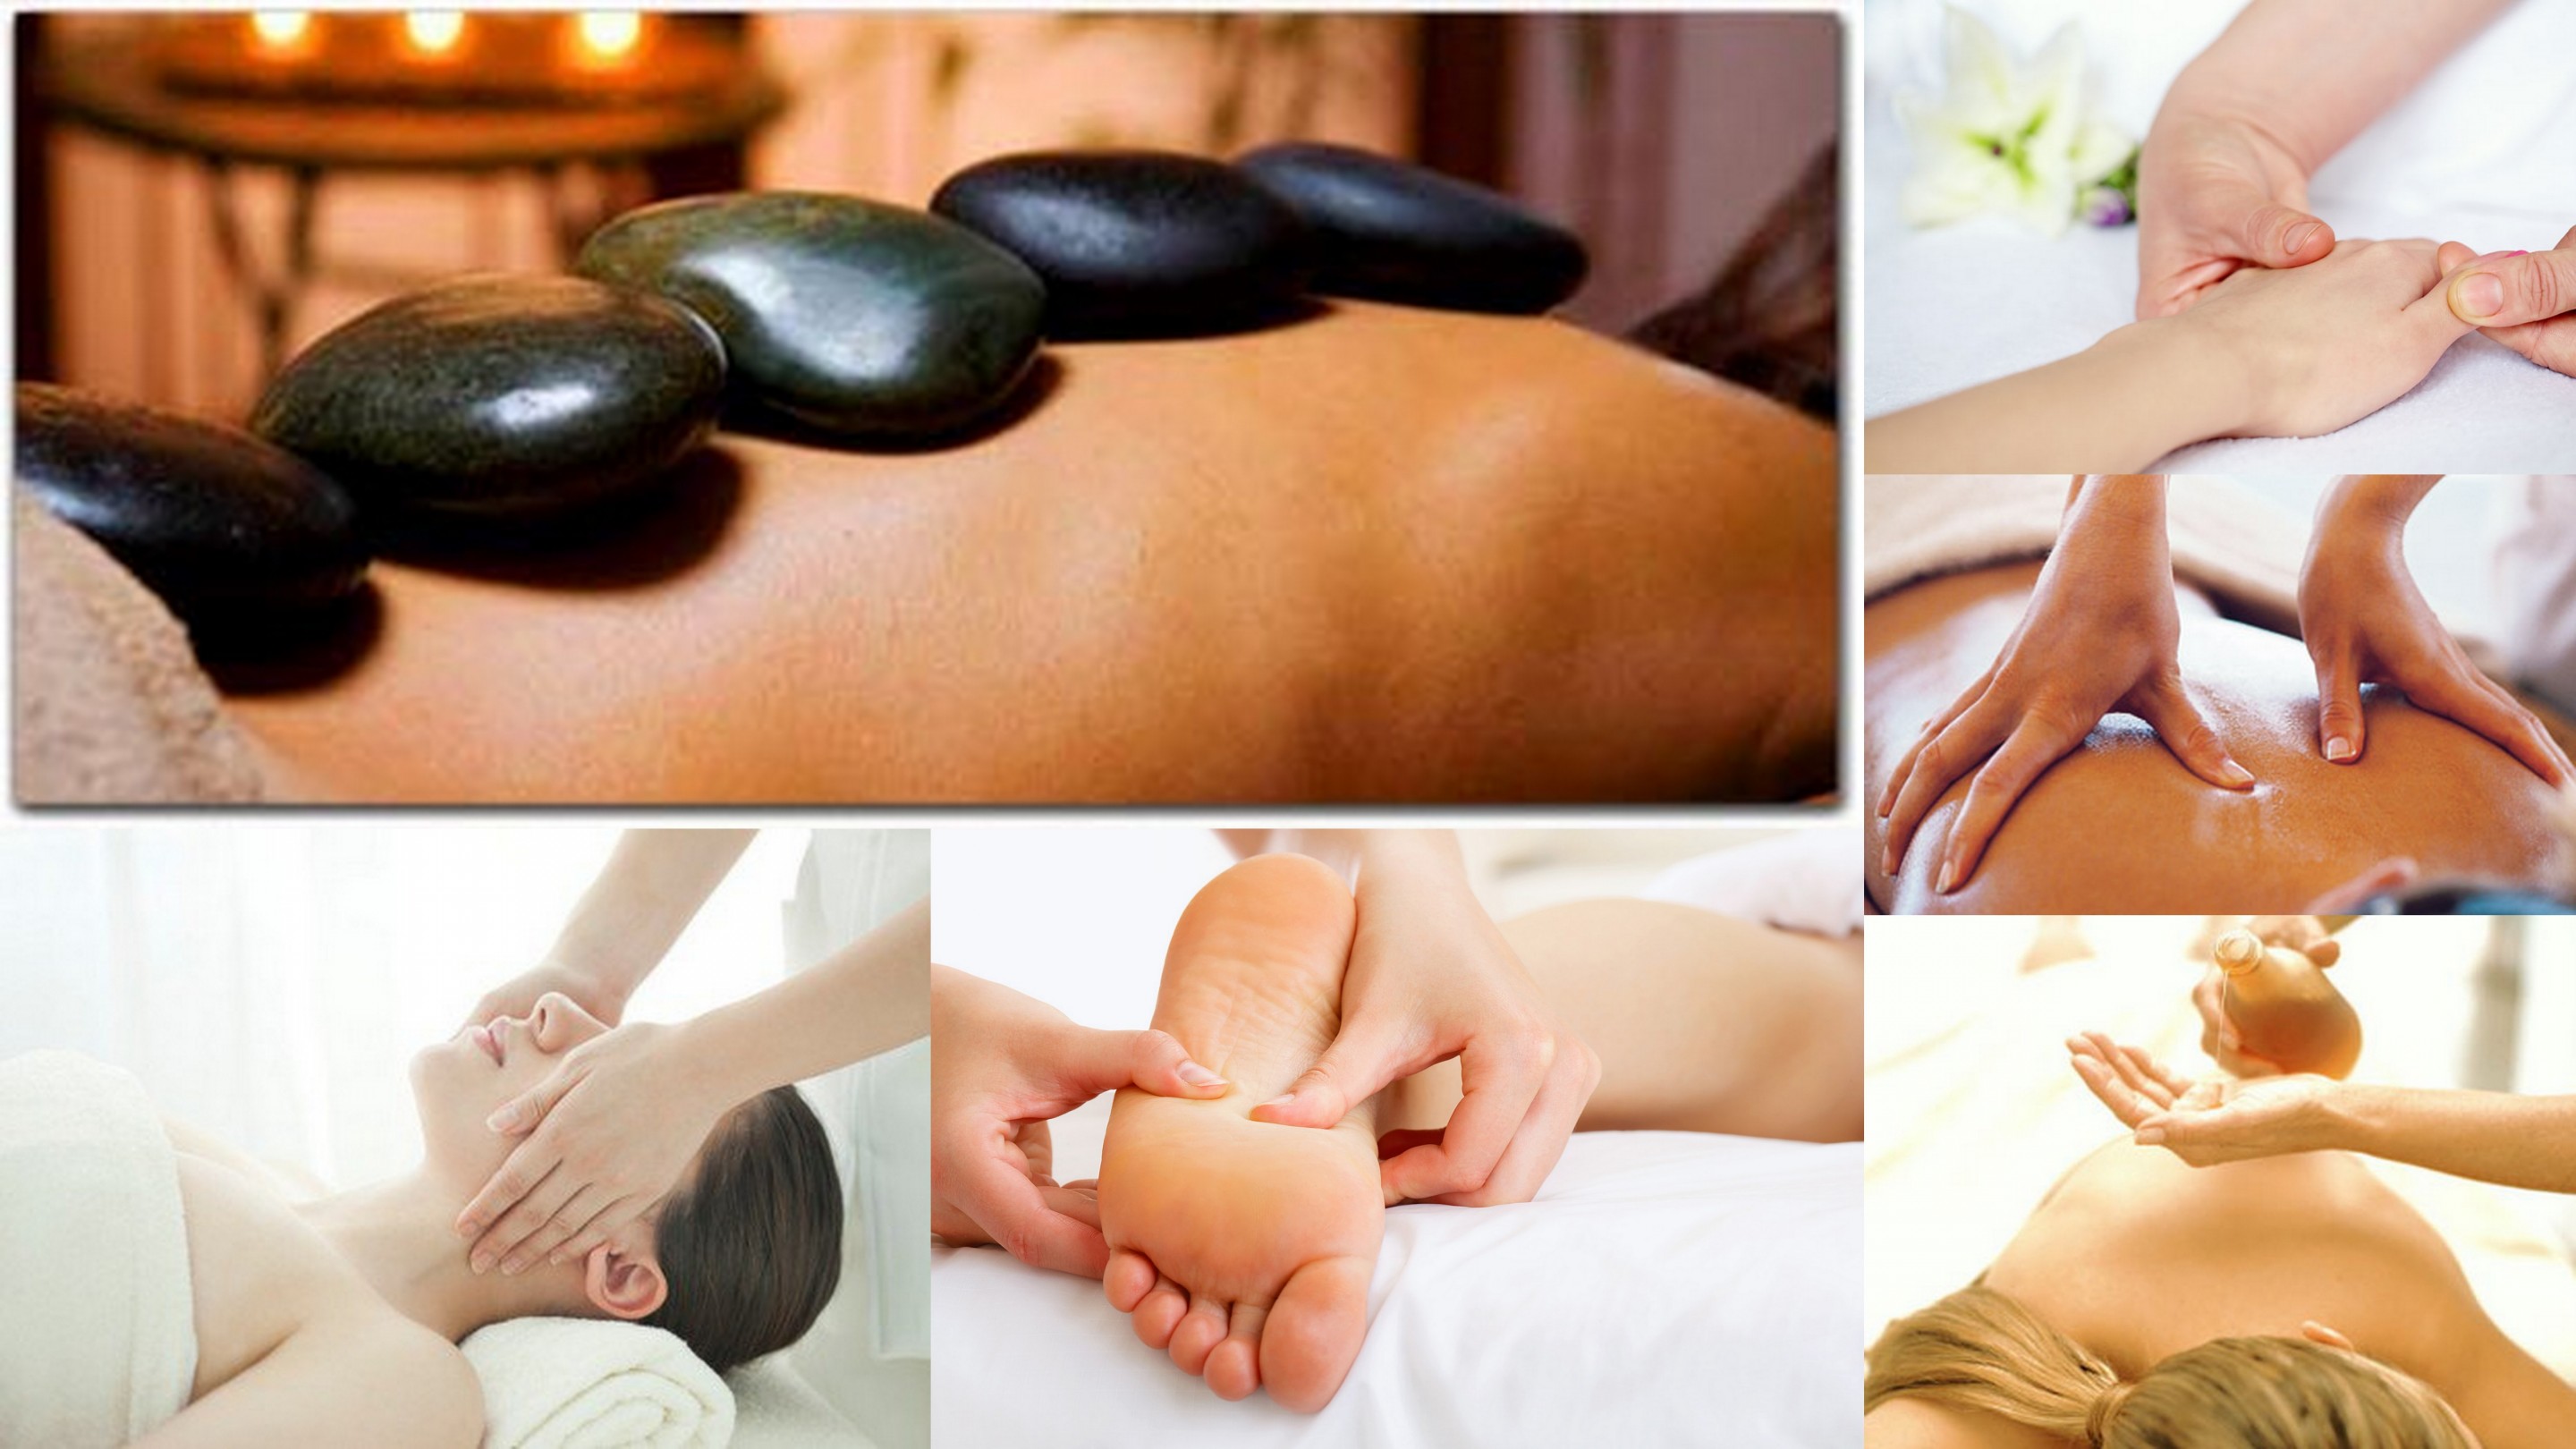 Massage types at Cherry Massage, Chinese deep tissue massage, Shiatsu, Swedish